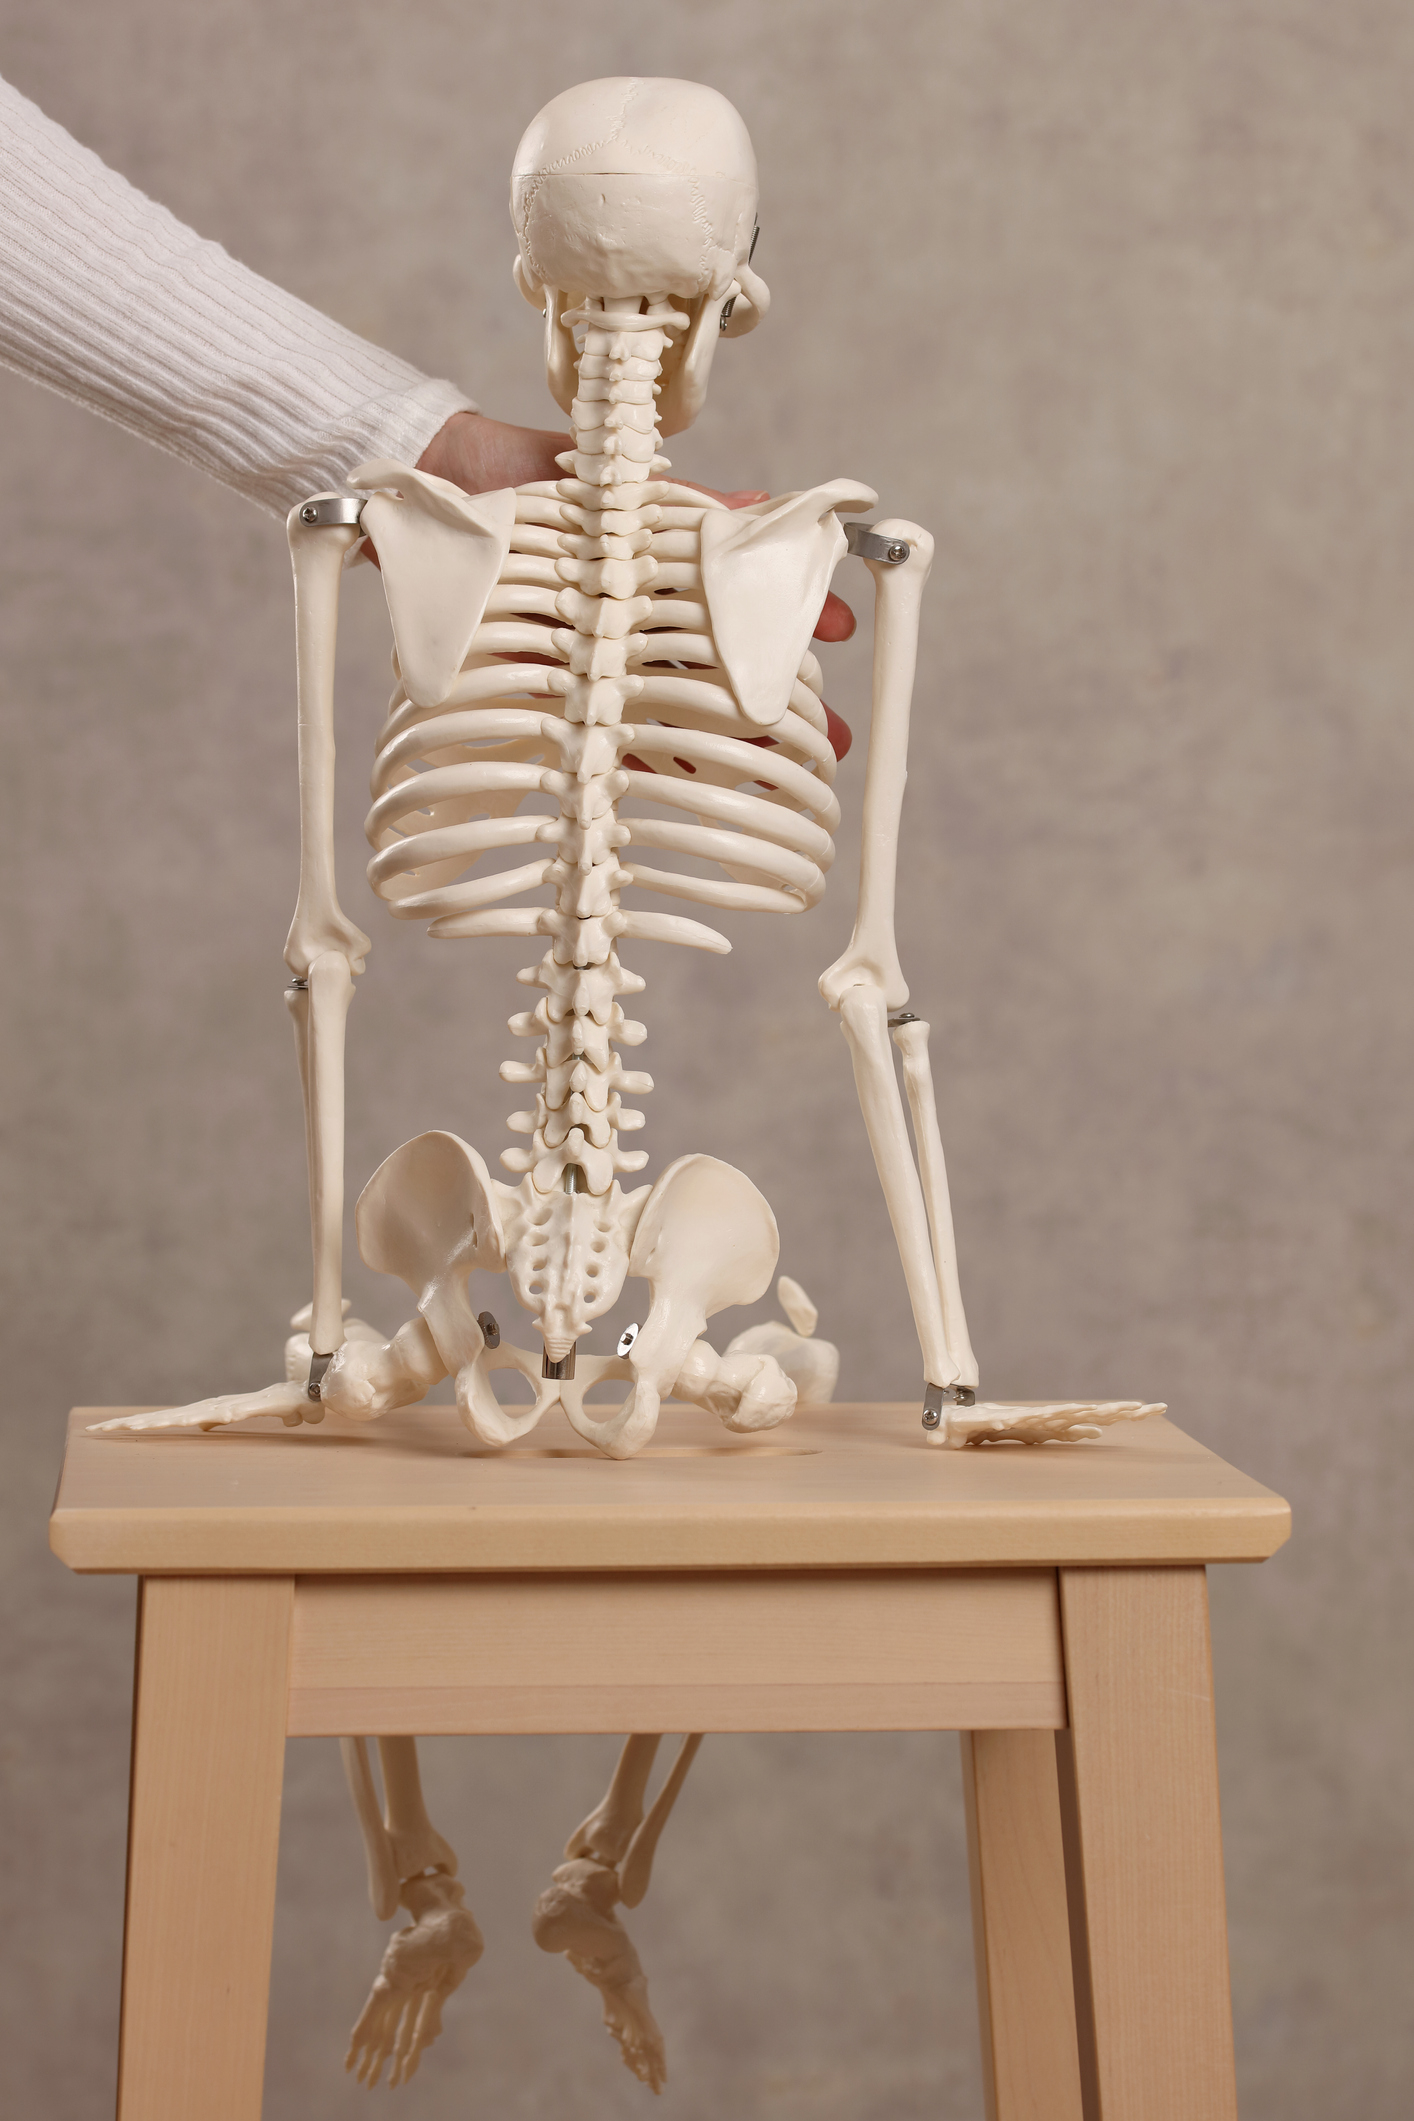 A skeleton on a stool